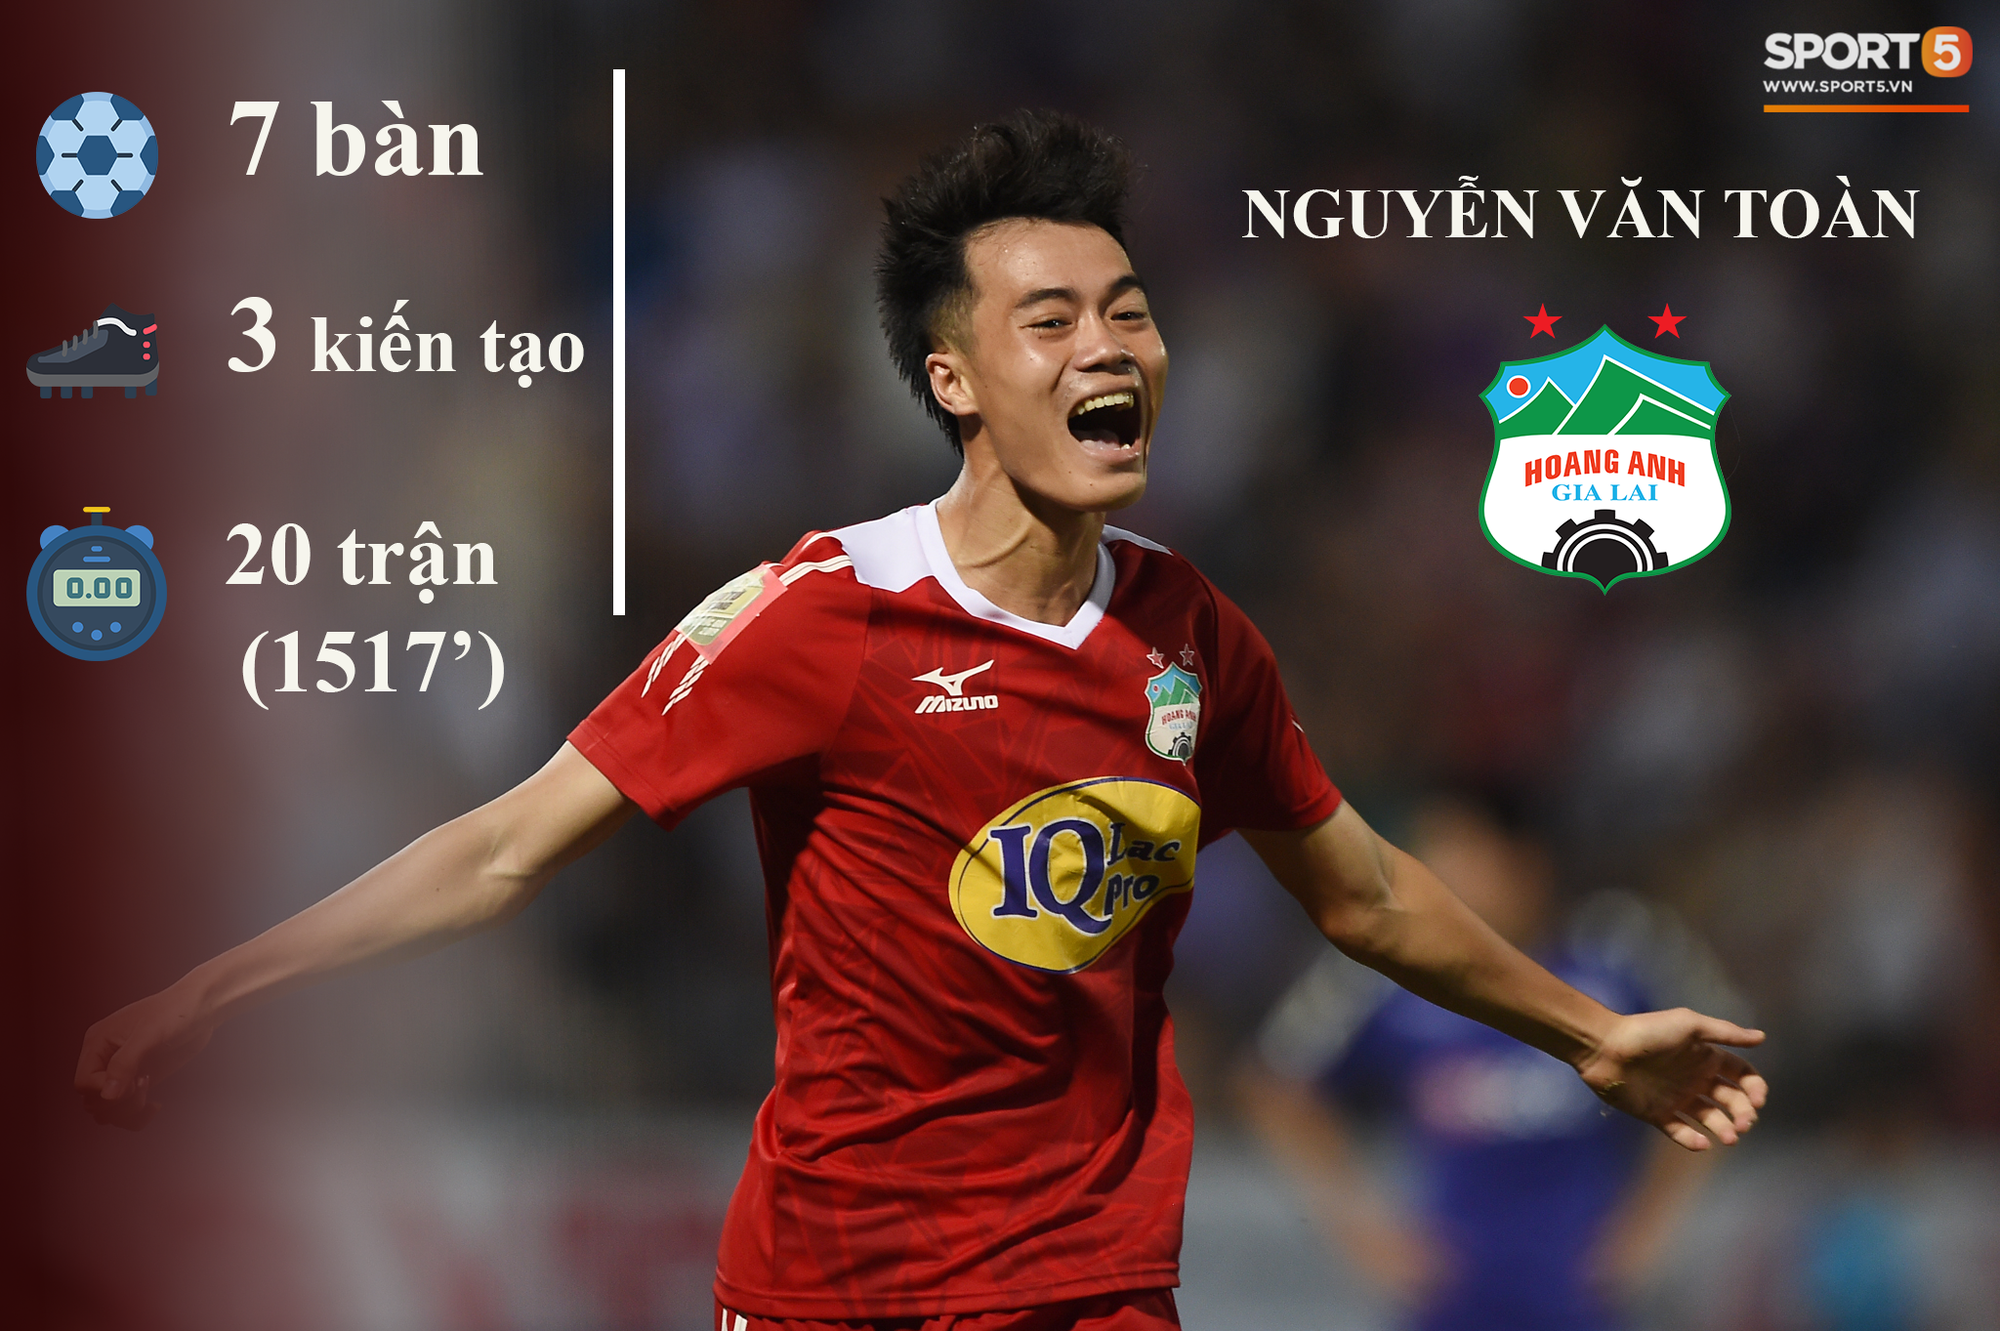 Những thống kê đáng chú ý của cầu thủ U23 Việt Nam (P1) - Ảnh 1.